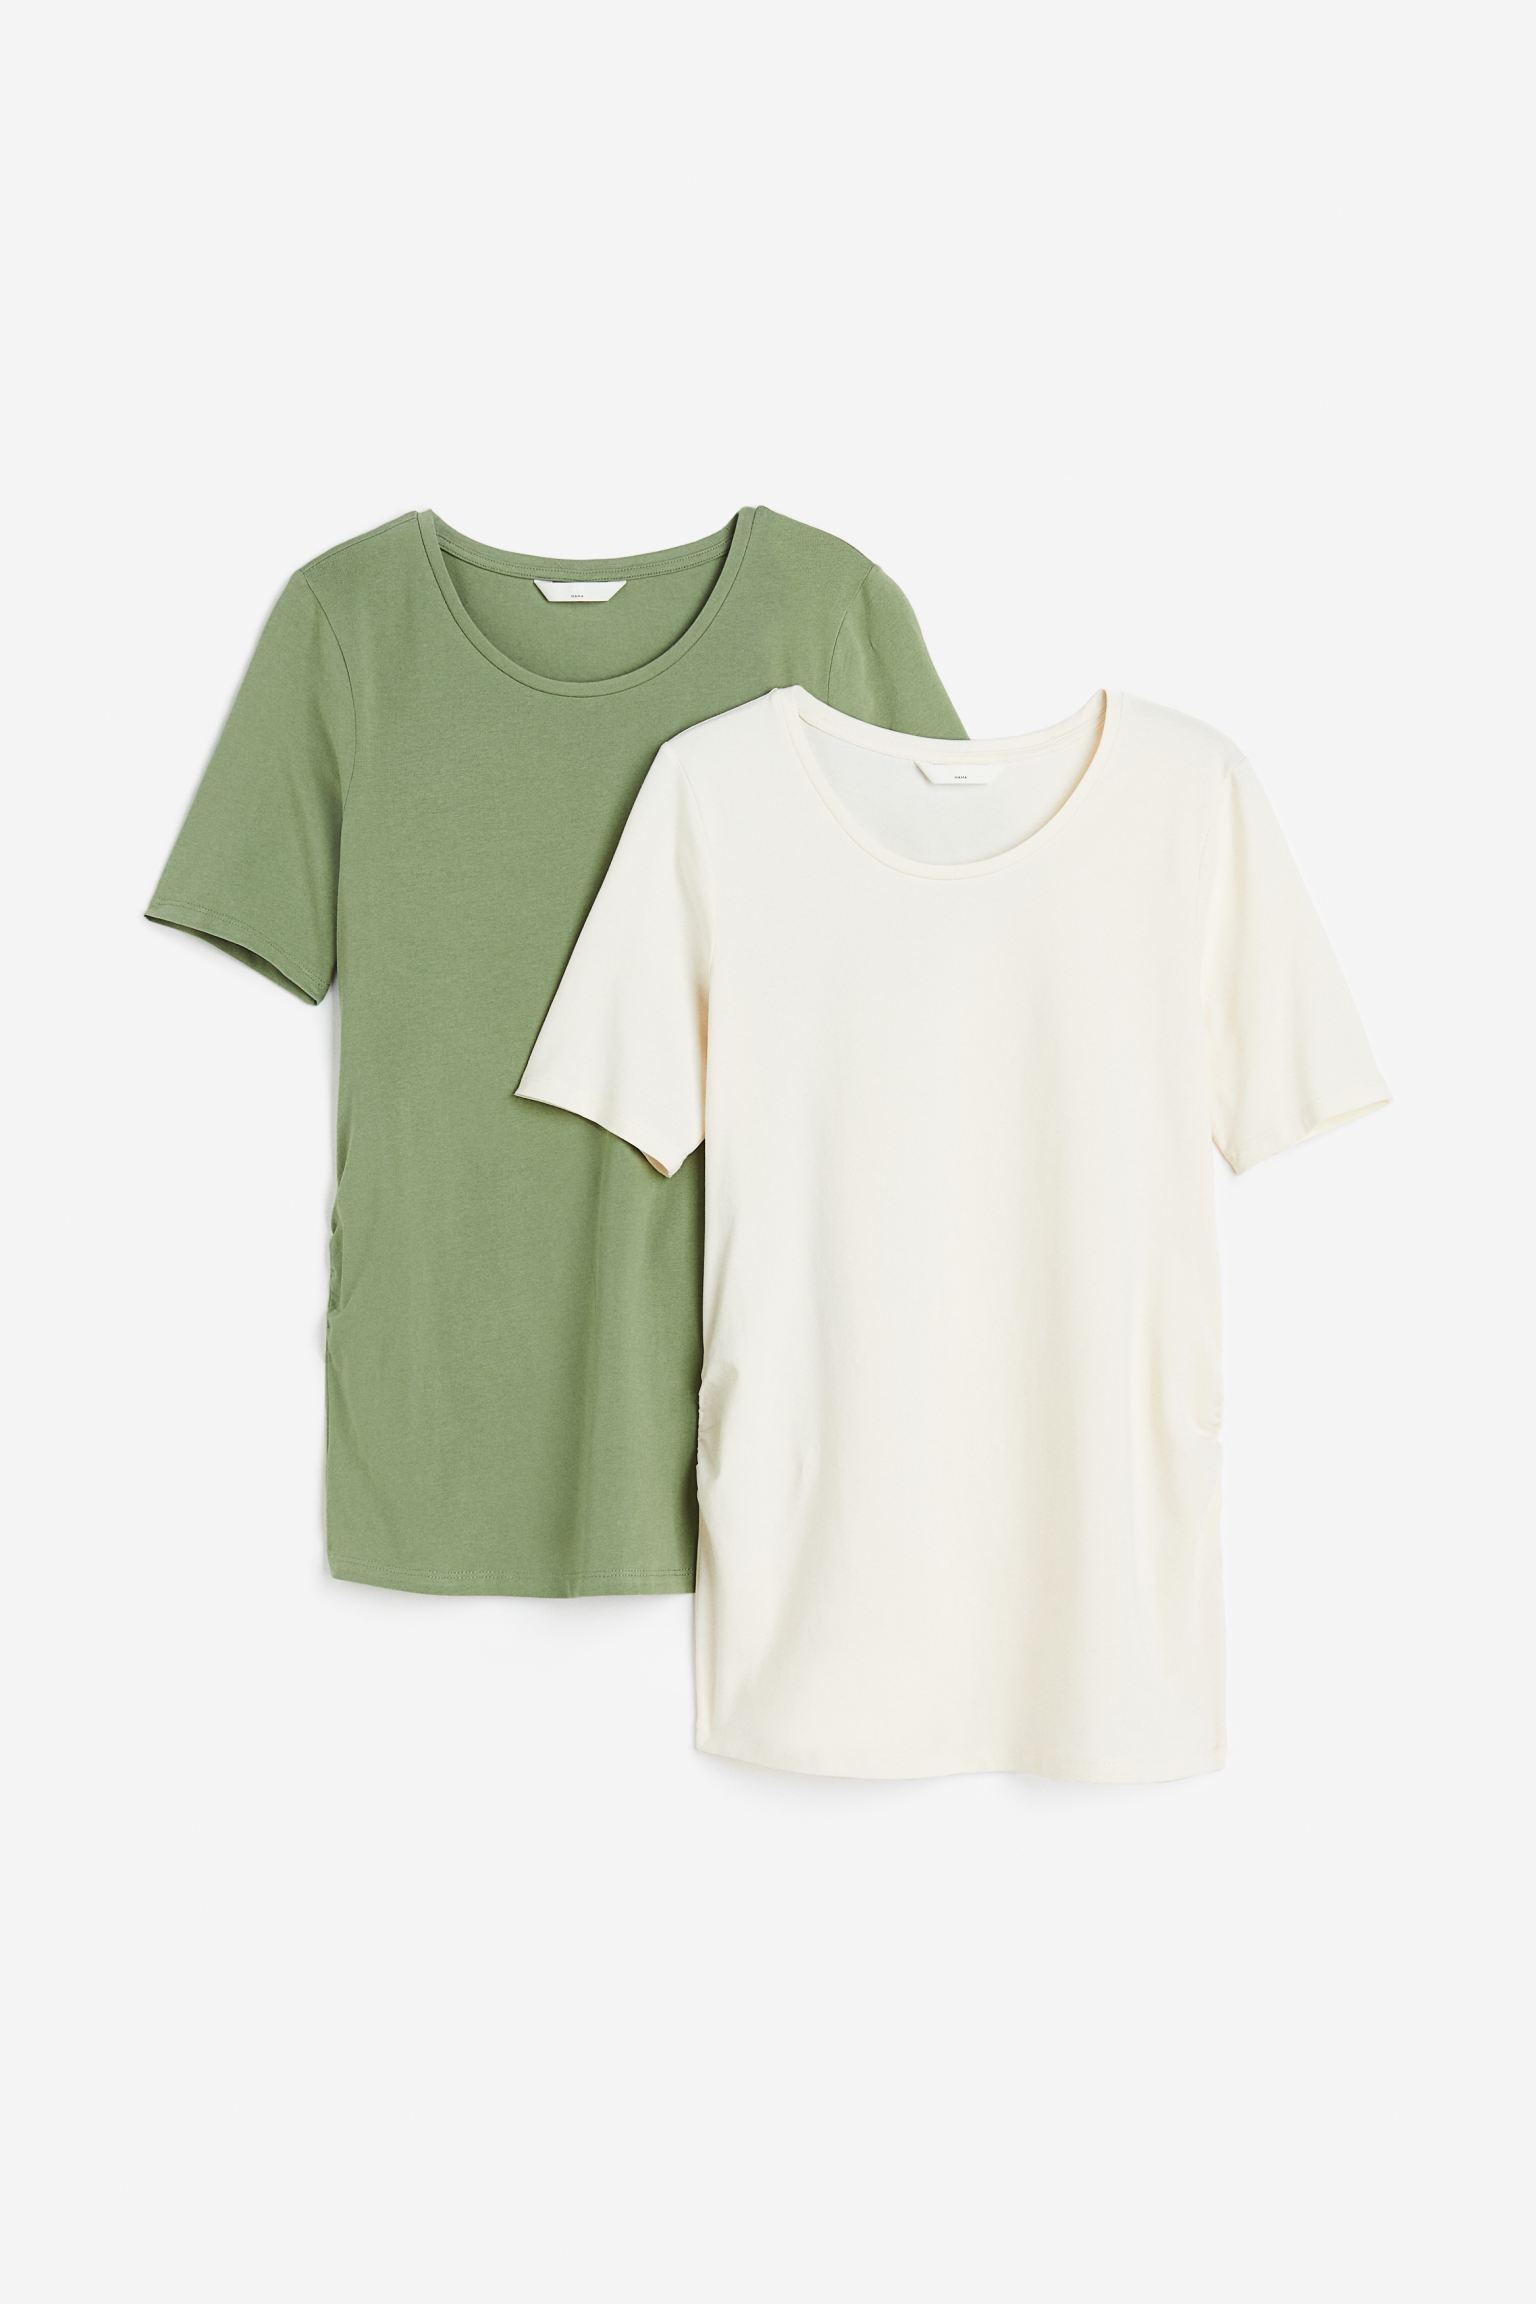 Комплект футболок женских H&M 1090126017 зеленых S (доставка из-за рубежа)